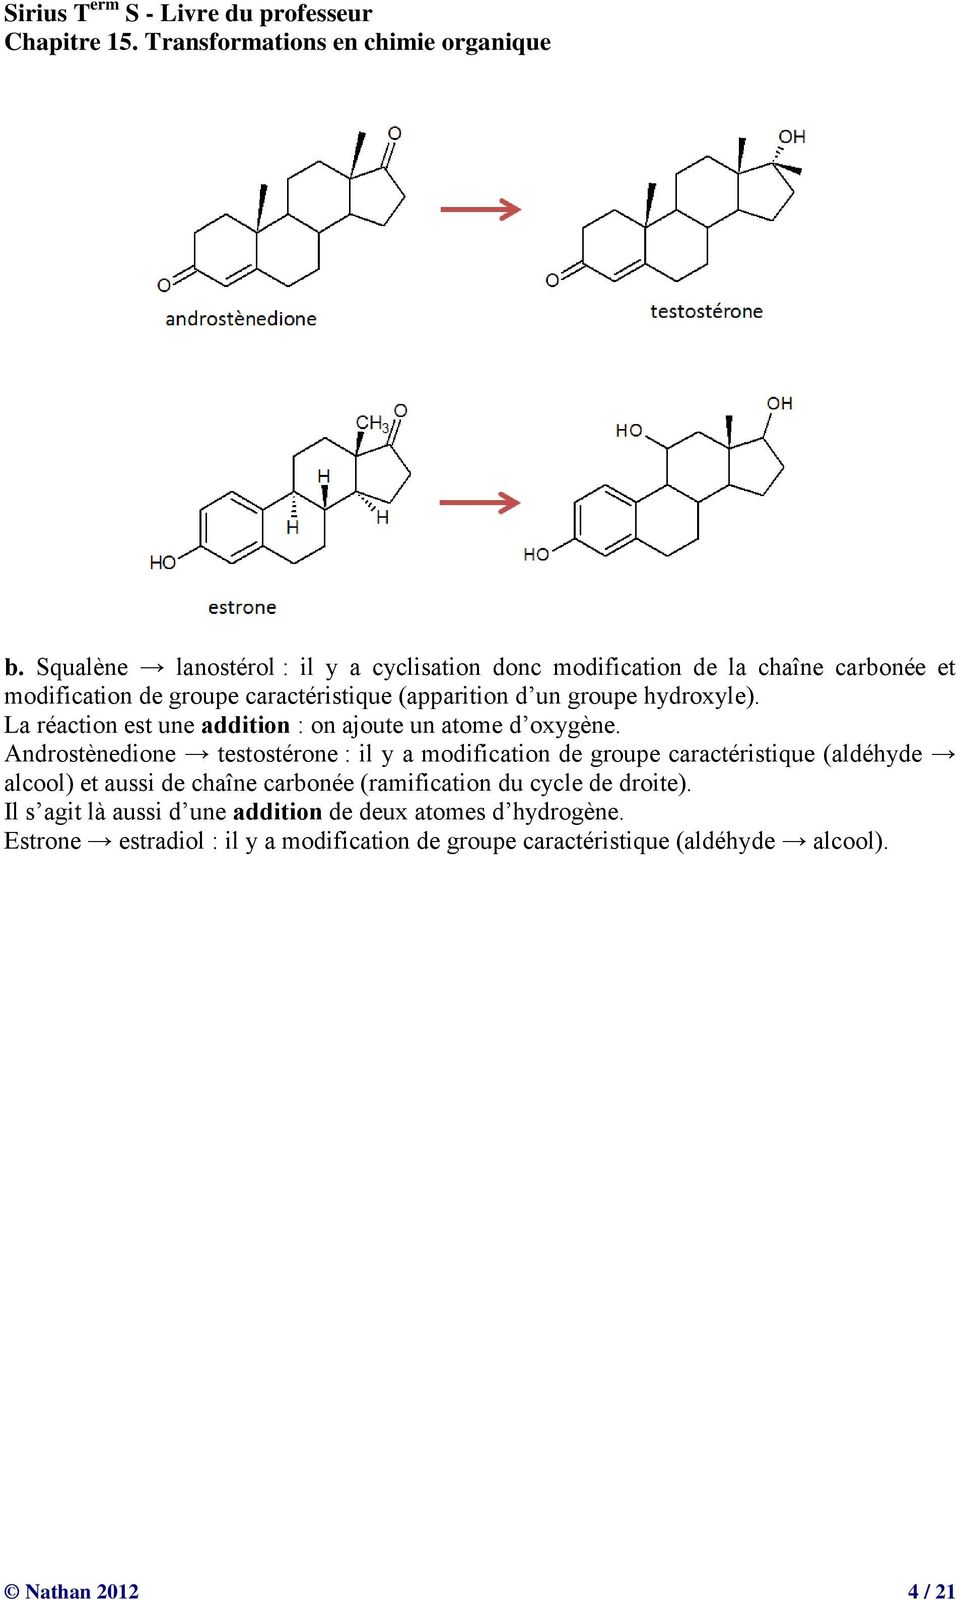 Androstènedione testostérone : il y a modification de groupe caractéristique (aldéhyde alcool) et aussi de chaîne carbonée (ramification